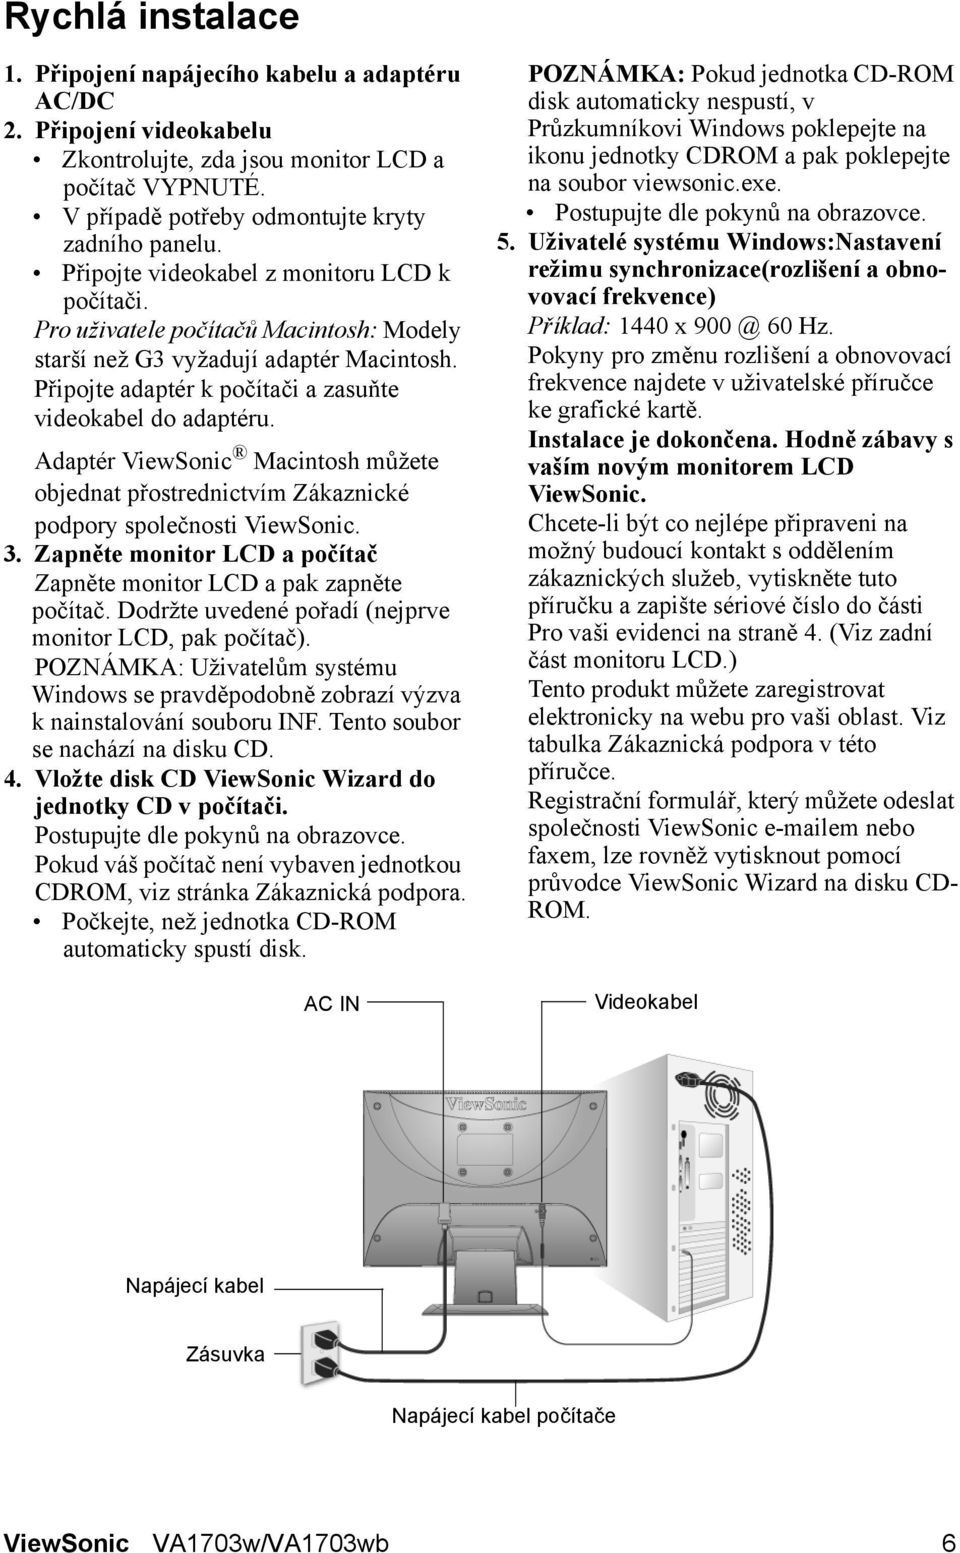 Adaptér ViewSonic Macintosh můžete objednat přostrednictvím Zákaznické podpory společnosti ViewSonic. 3. Zapněte monitor LCD a počítač Zapněte monitor LCD a pak zapněte počítač.